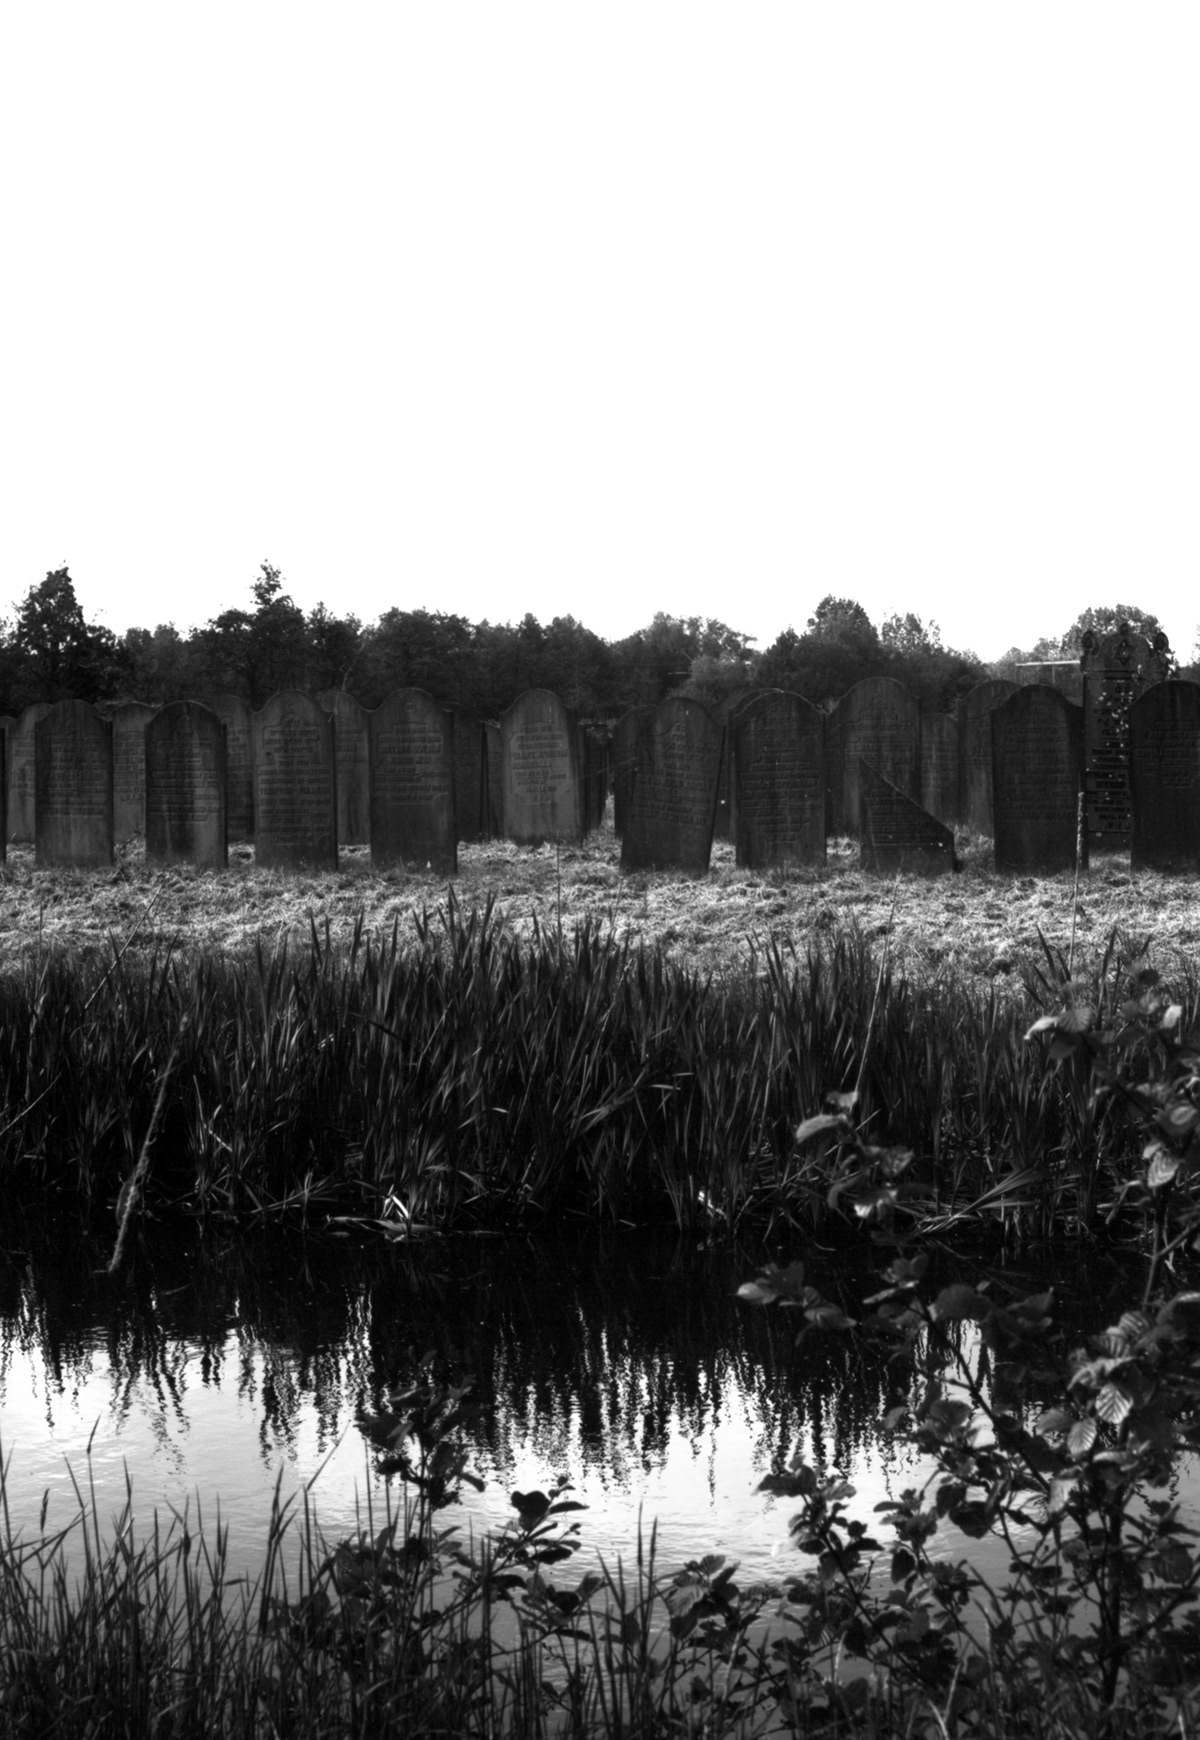 35mm cemetery dark death gothic graveyard monochrome Photography  spiderweb stone